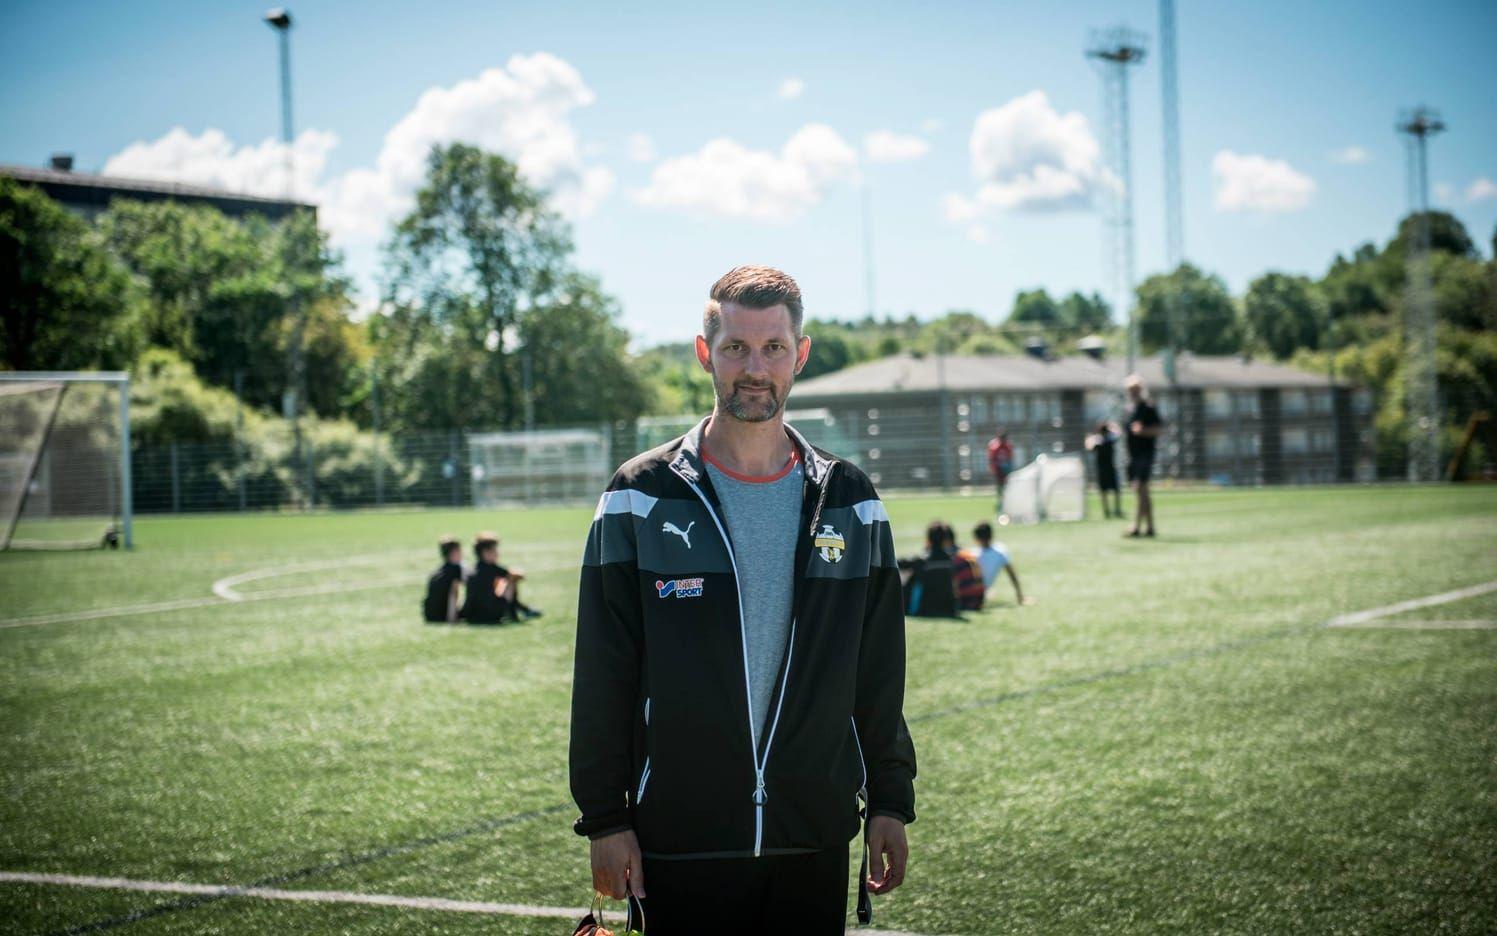 Alexander Olofsson i Hisingsbacka FC menar att det oftast är föräldrarna som uttrycker sig rasistiskt under matcherna. Bild: Olof Ohlsson